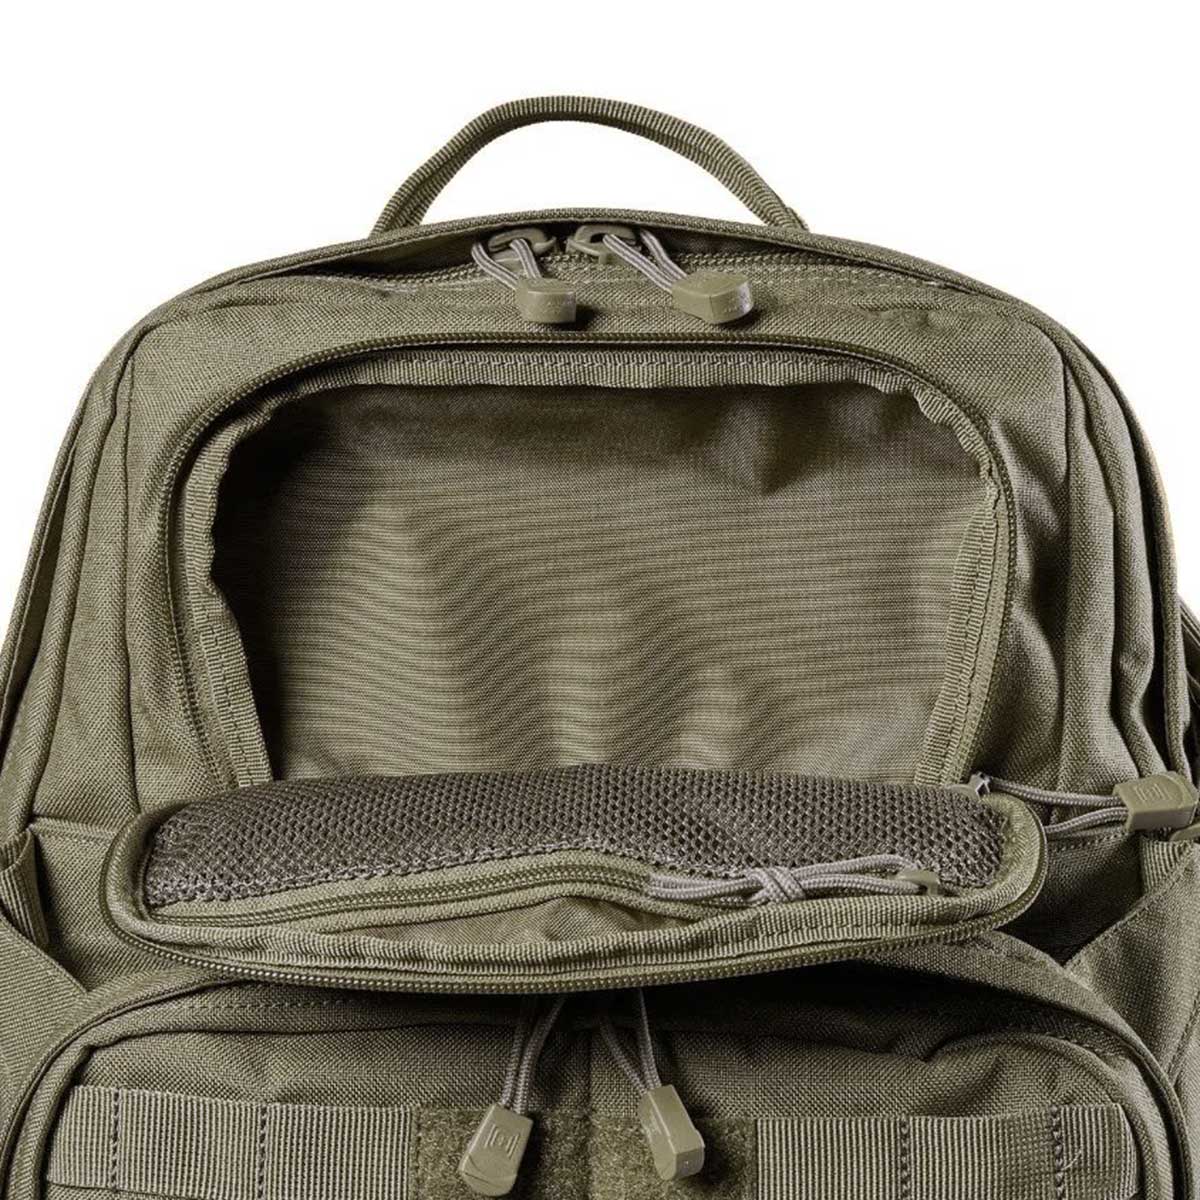 Рюкзак 5.11 RUSH72 2.0 Backpack 55 л - Ranger Green